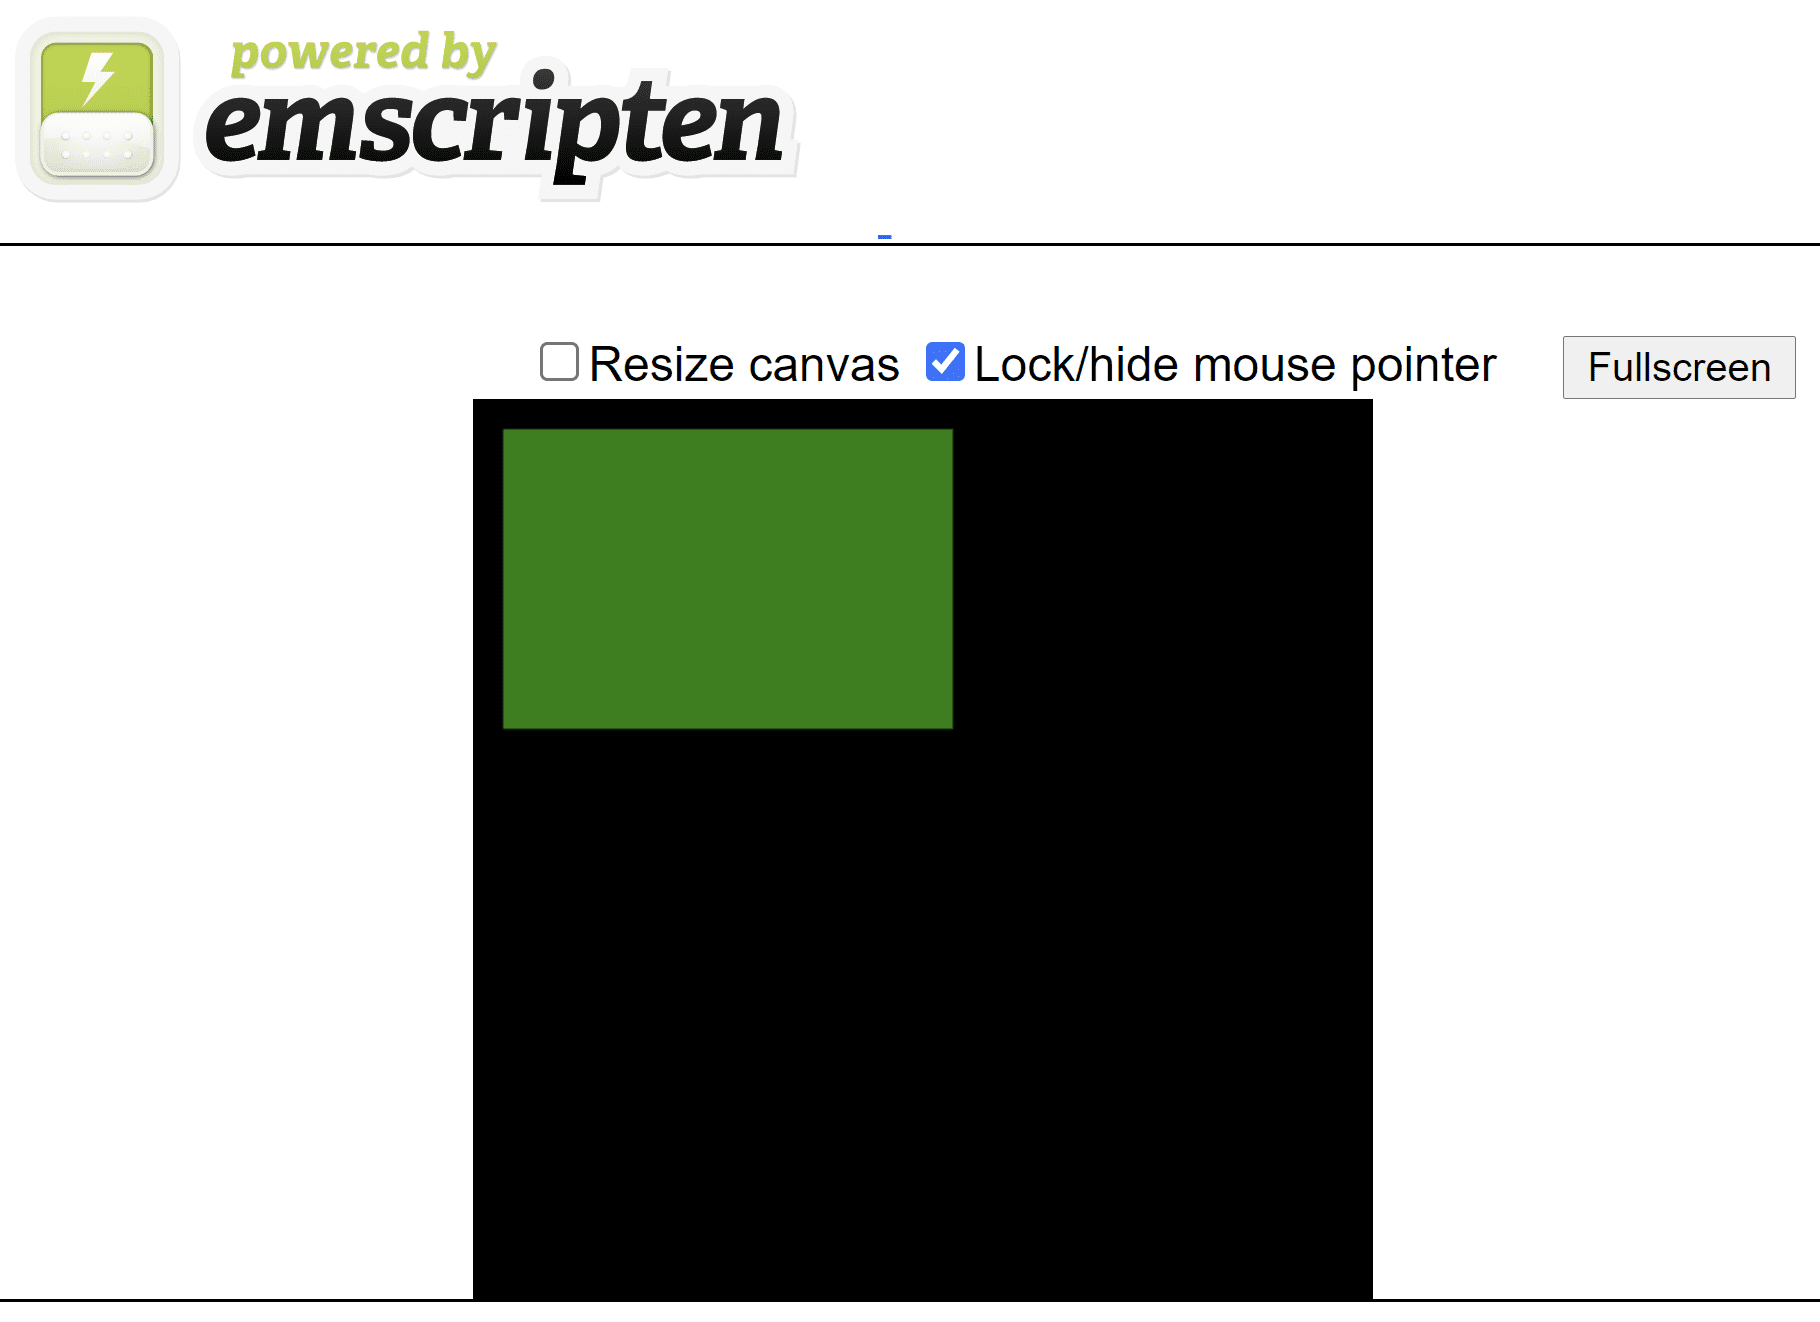 หน้า HTML ที่สร้างโดย Emscript ซึ่งแสดงสี่เหลี่ยมผืนผ้าสีเขียวบนผืนผ้าใบสี่เหลี่ยมจัตุรัสสีดำ